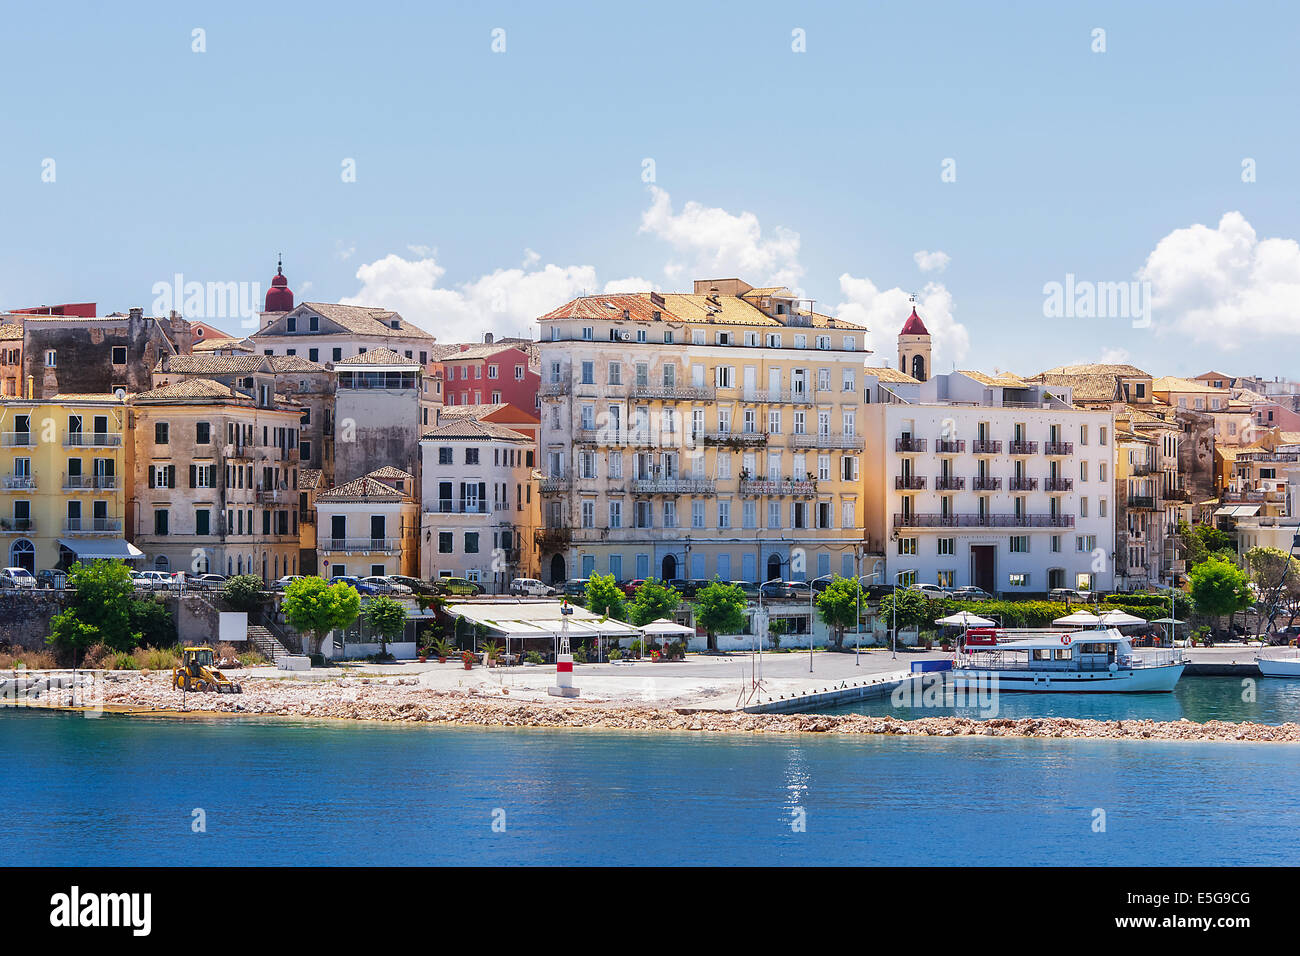 Korfu, Hauptstadt von Korfu Insel. Blick auf Korfu-Stadt, die Hauptstadt der Insel Kerkyra oder Korfu, aus dem Meer gesehen Stockfoto